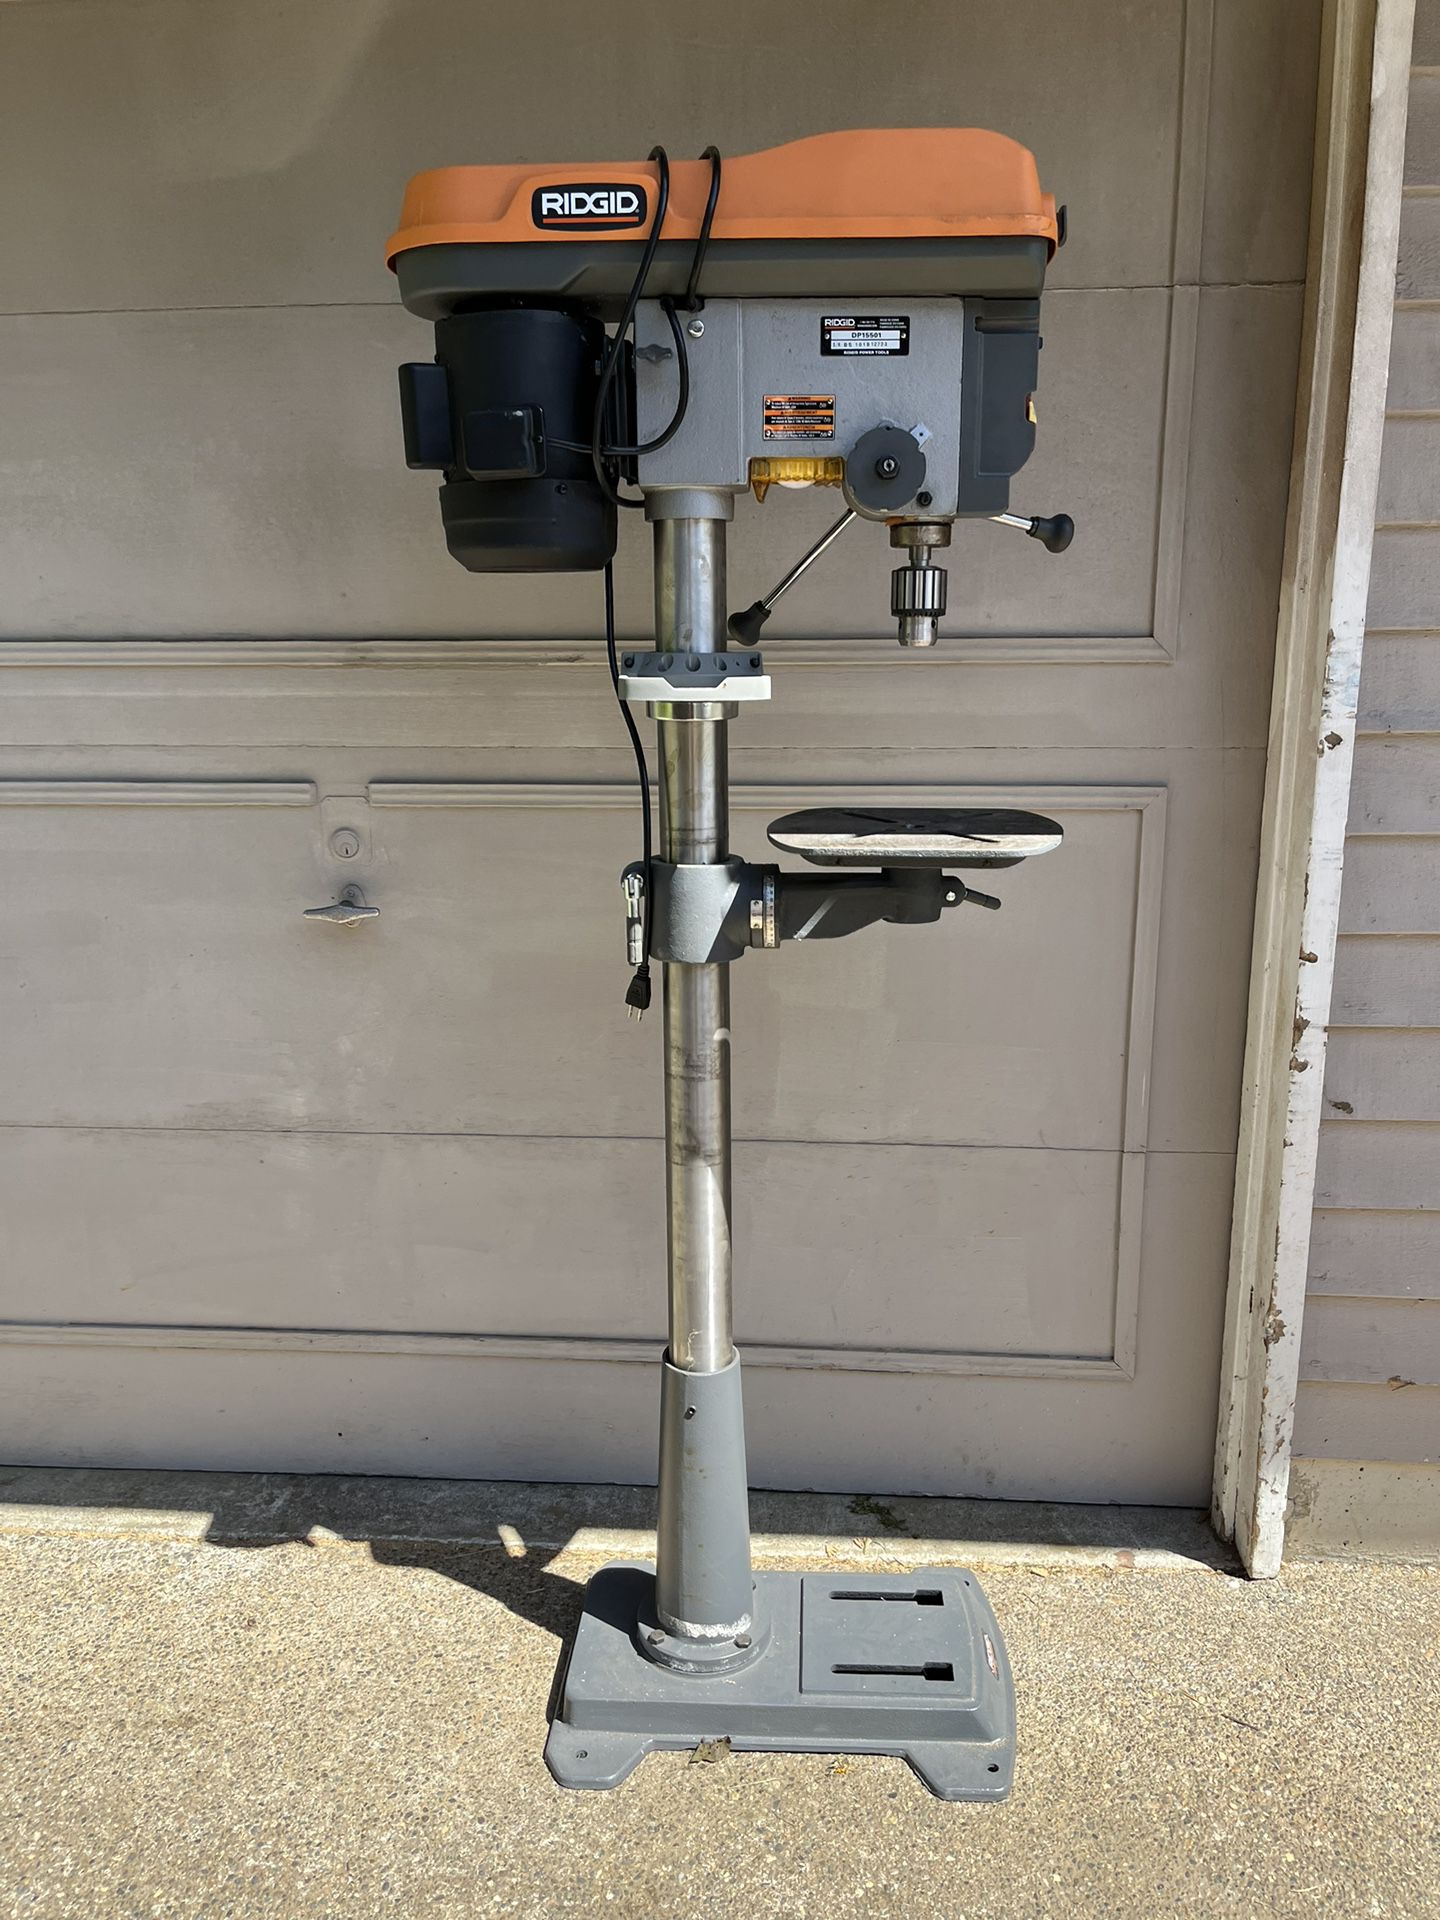 (new) Ridgid 15” Floor Standing Drill Press